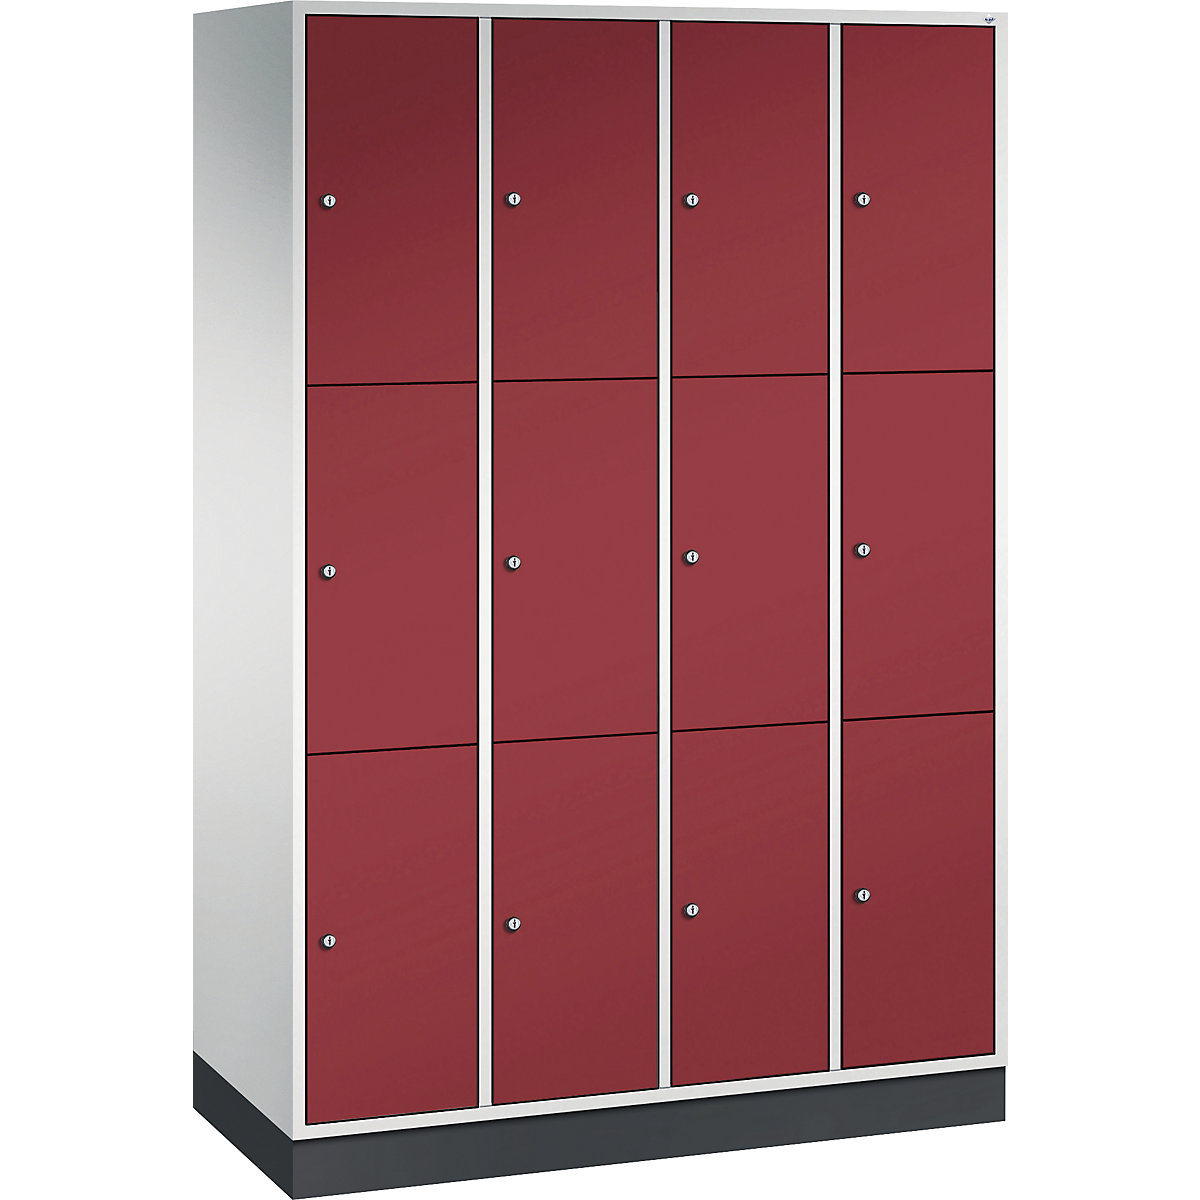 Vestiaire multicases en acier INTRO, casiers hauteur 580 mm – C+P, l x p 1220 x 500 mm, 12 casiers, corps gris clair, portes rouge rubis-10